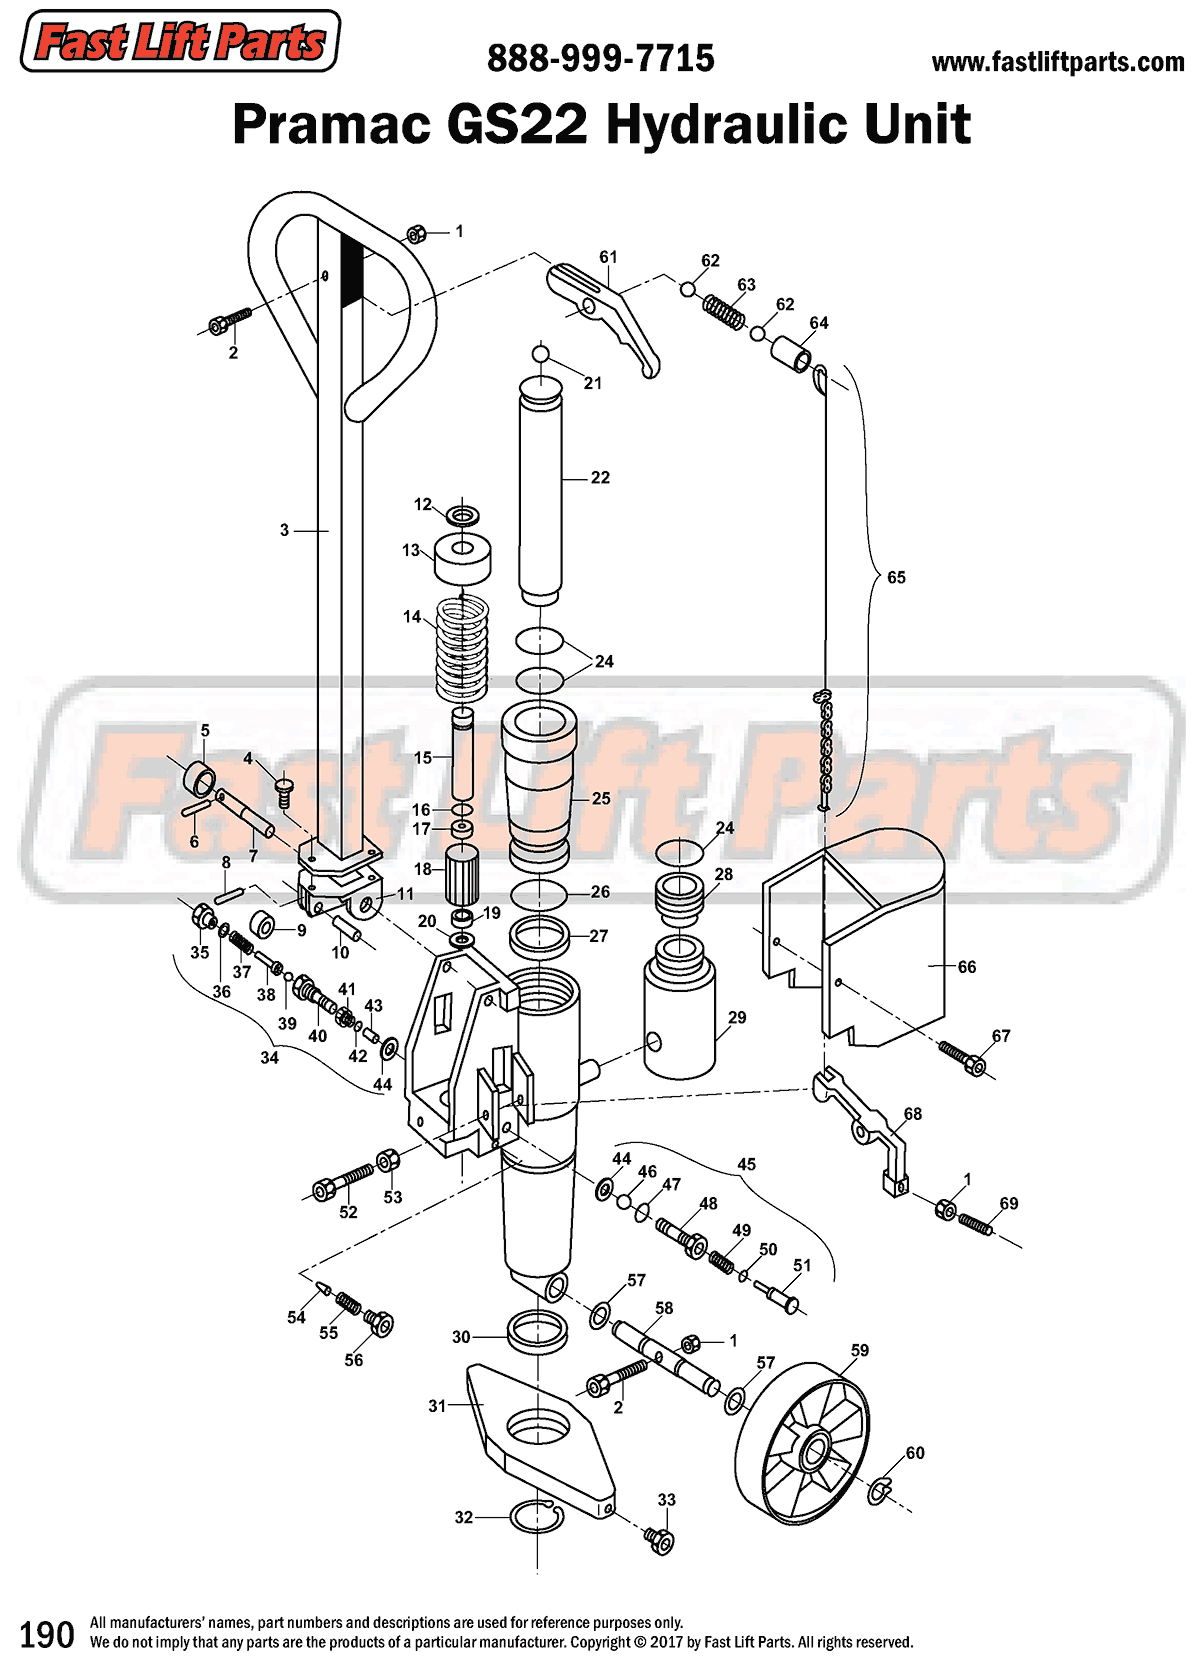 Pramac GS22 Hydraulic Unit Line Drawing